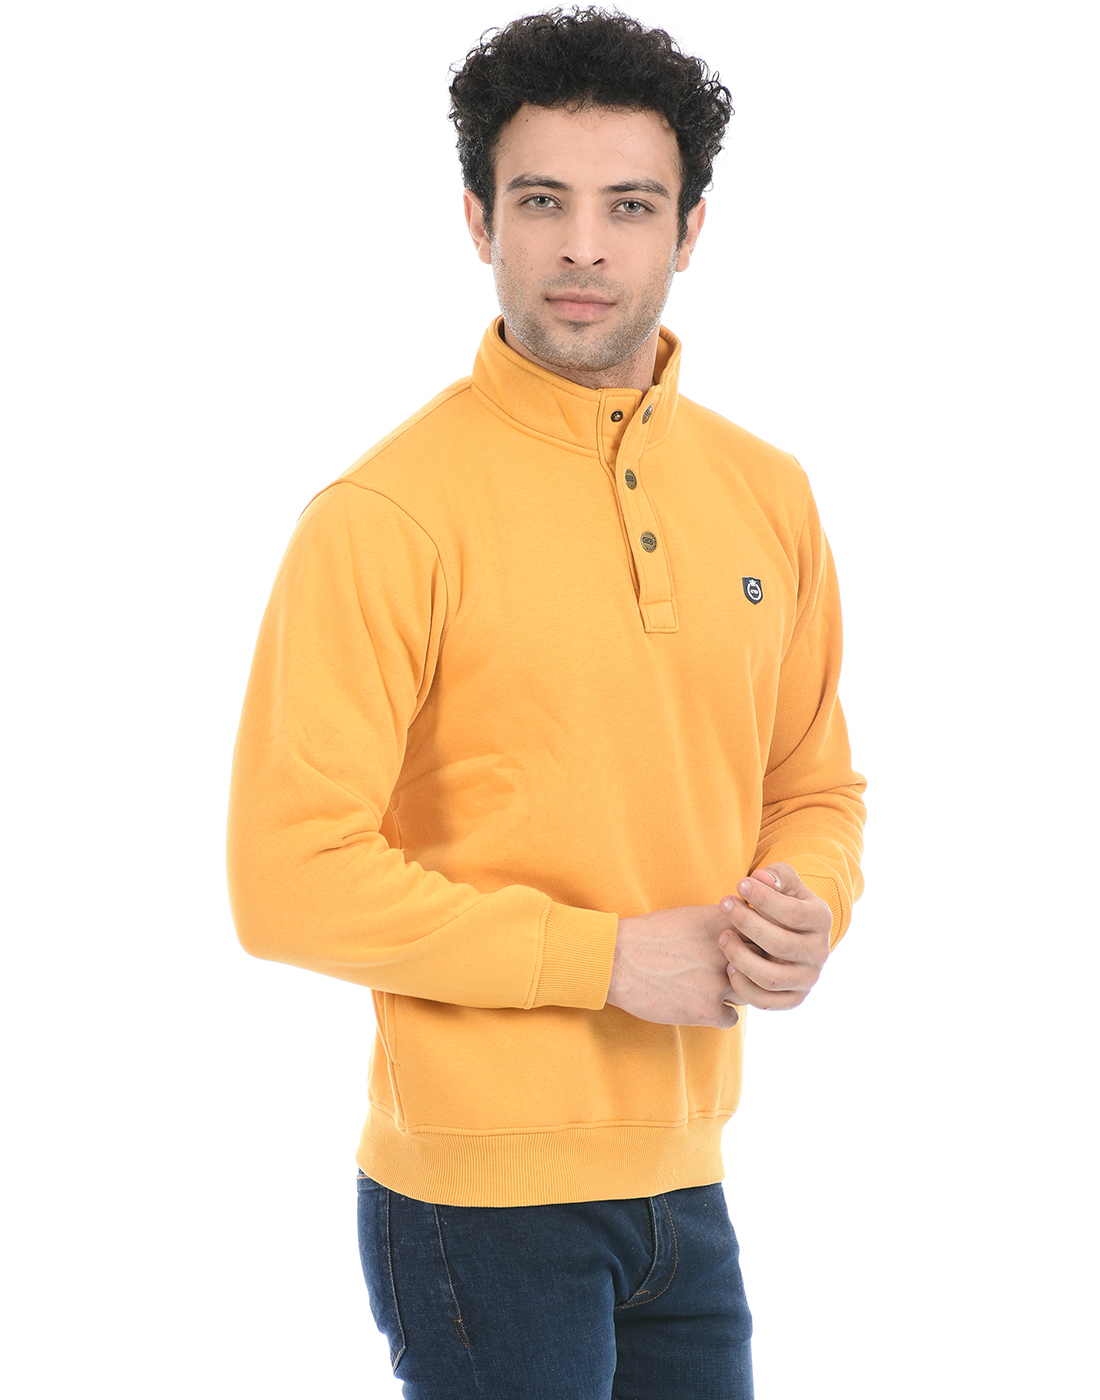 Cloak & Decker by Monte Carlo Men Solid Yellow Sweatshirt